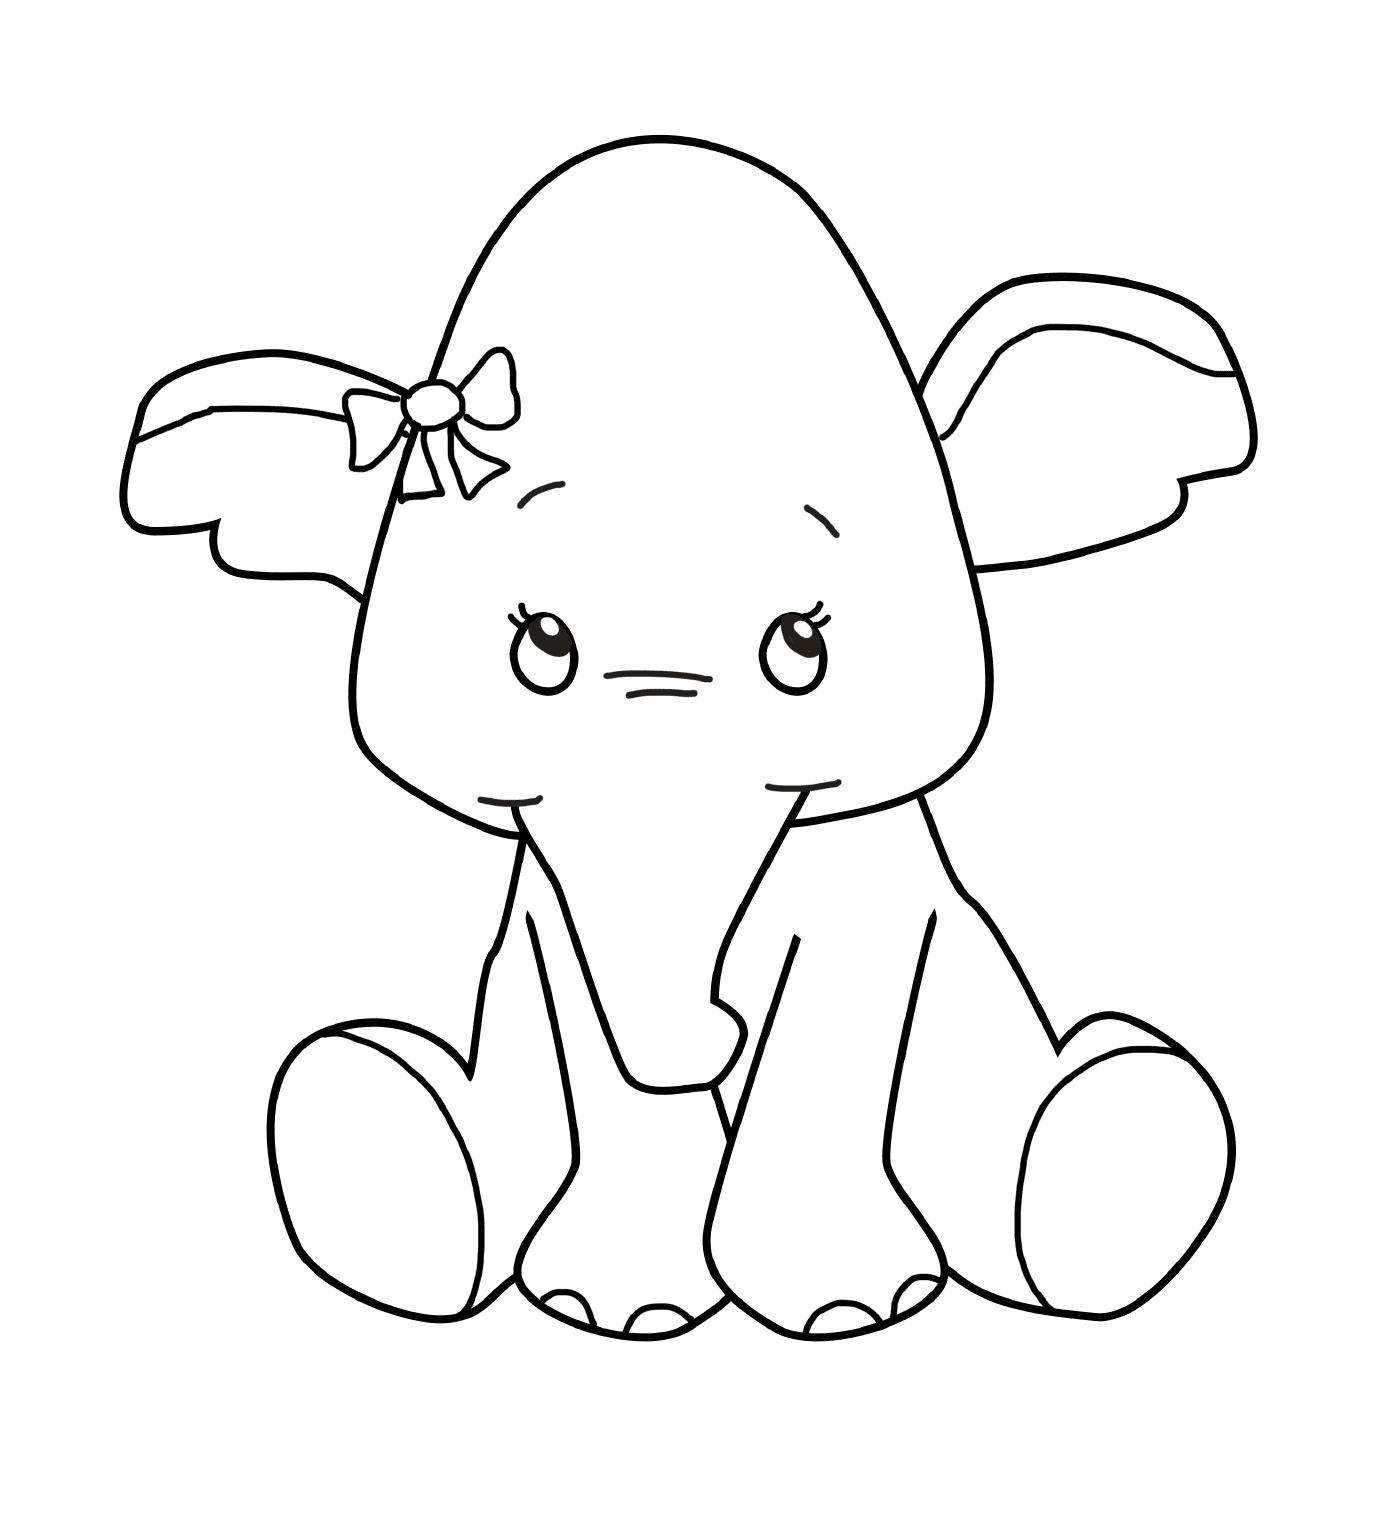  Ein Elefantenbaby mit einem Knoten auf dem Kopf 